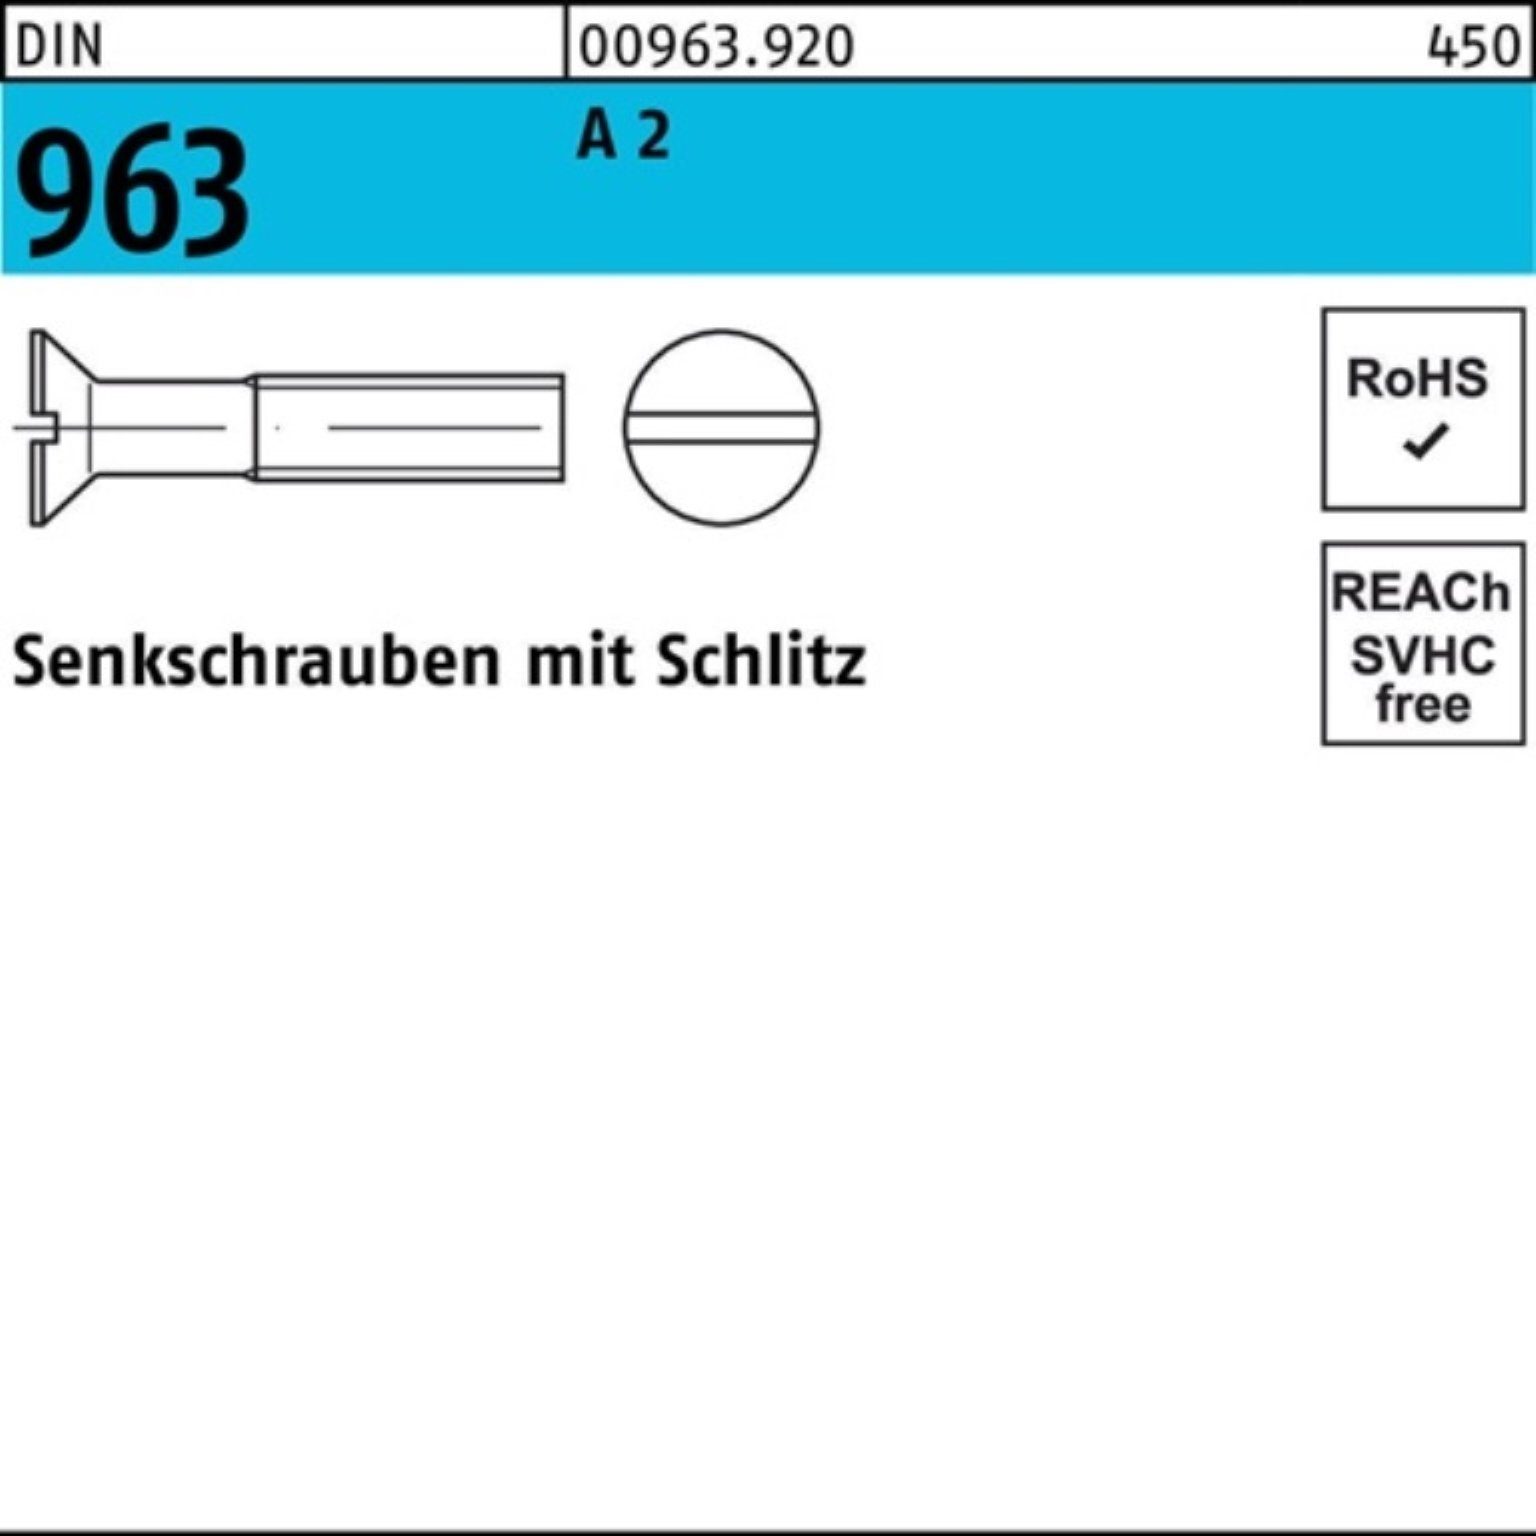 Reyher Senkschraube 1000er Pack Senkschraube 2 M3x A DIN Schlitz DIN 96 963 20 1000 Stück